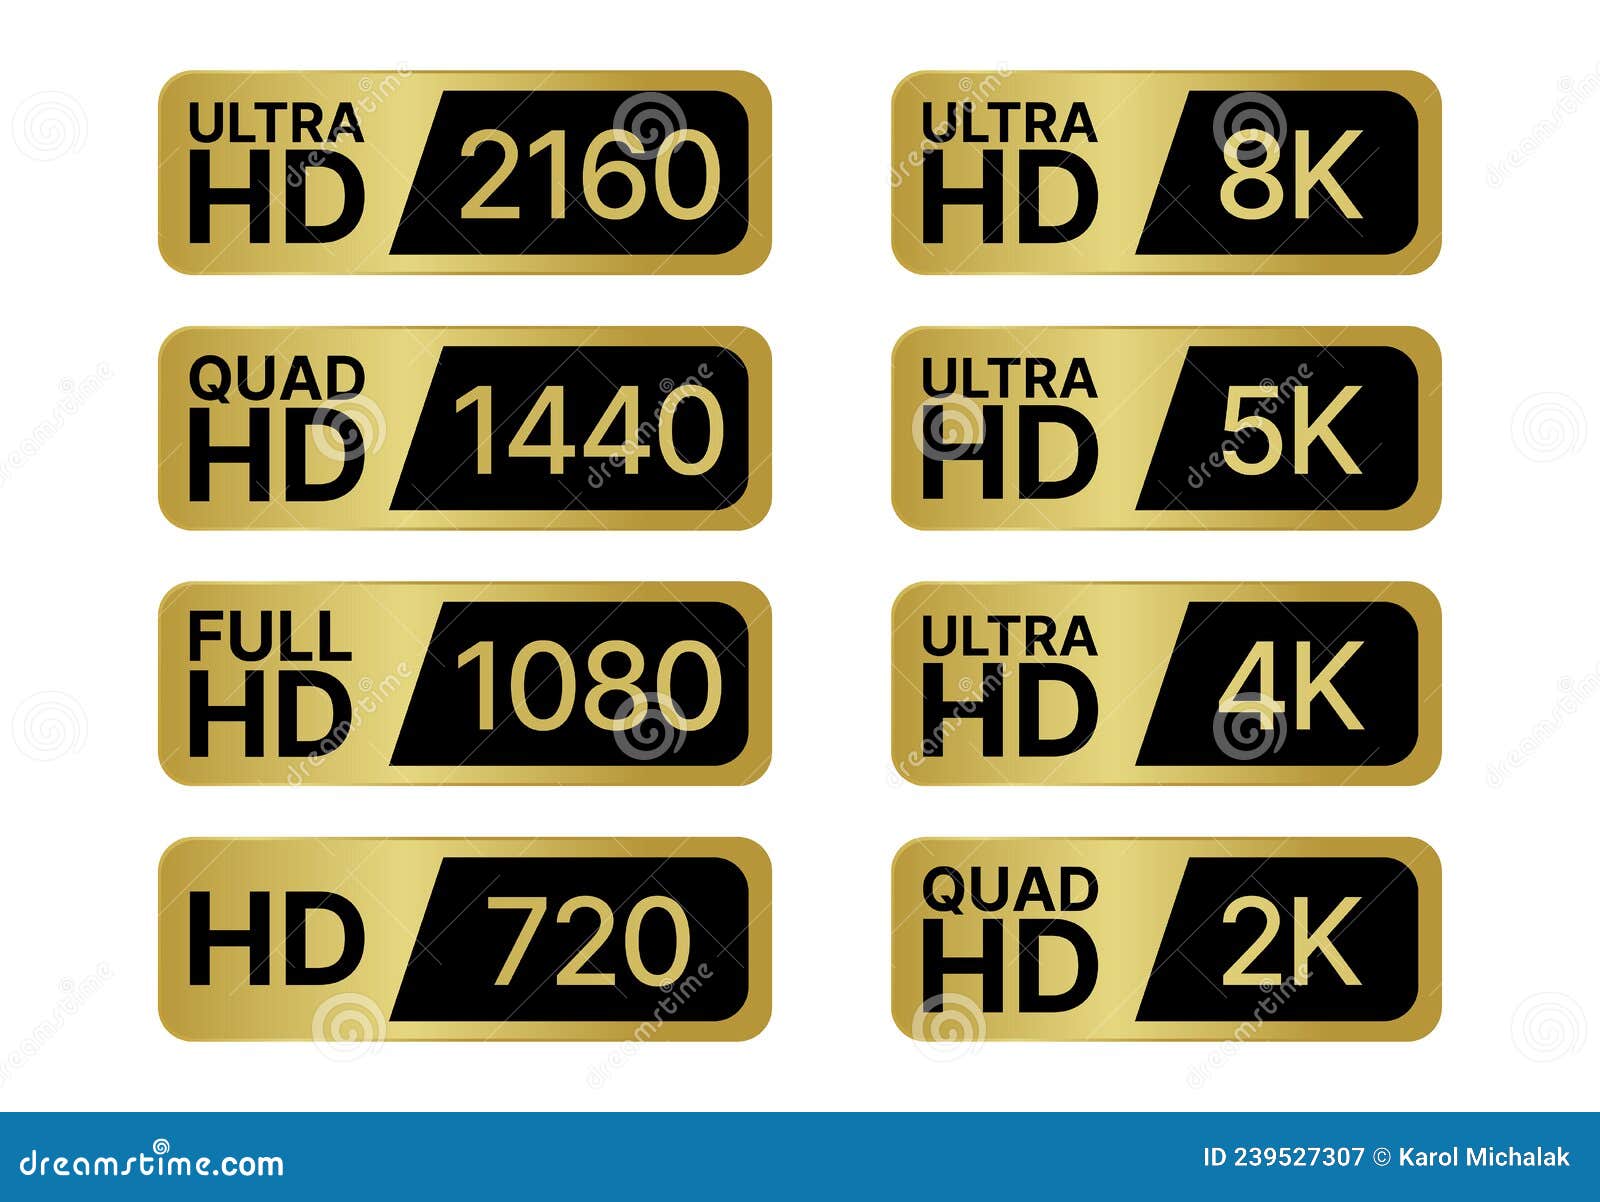 Hd Labels Set Full Ultra Quad High Definition Badge 8k 4k 2k